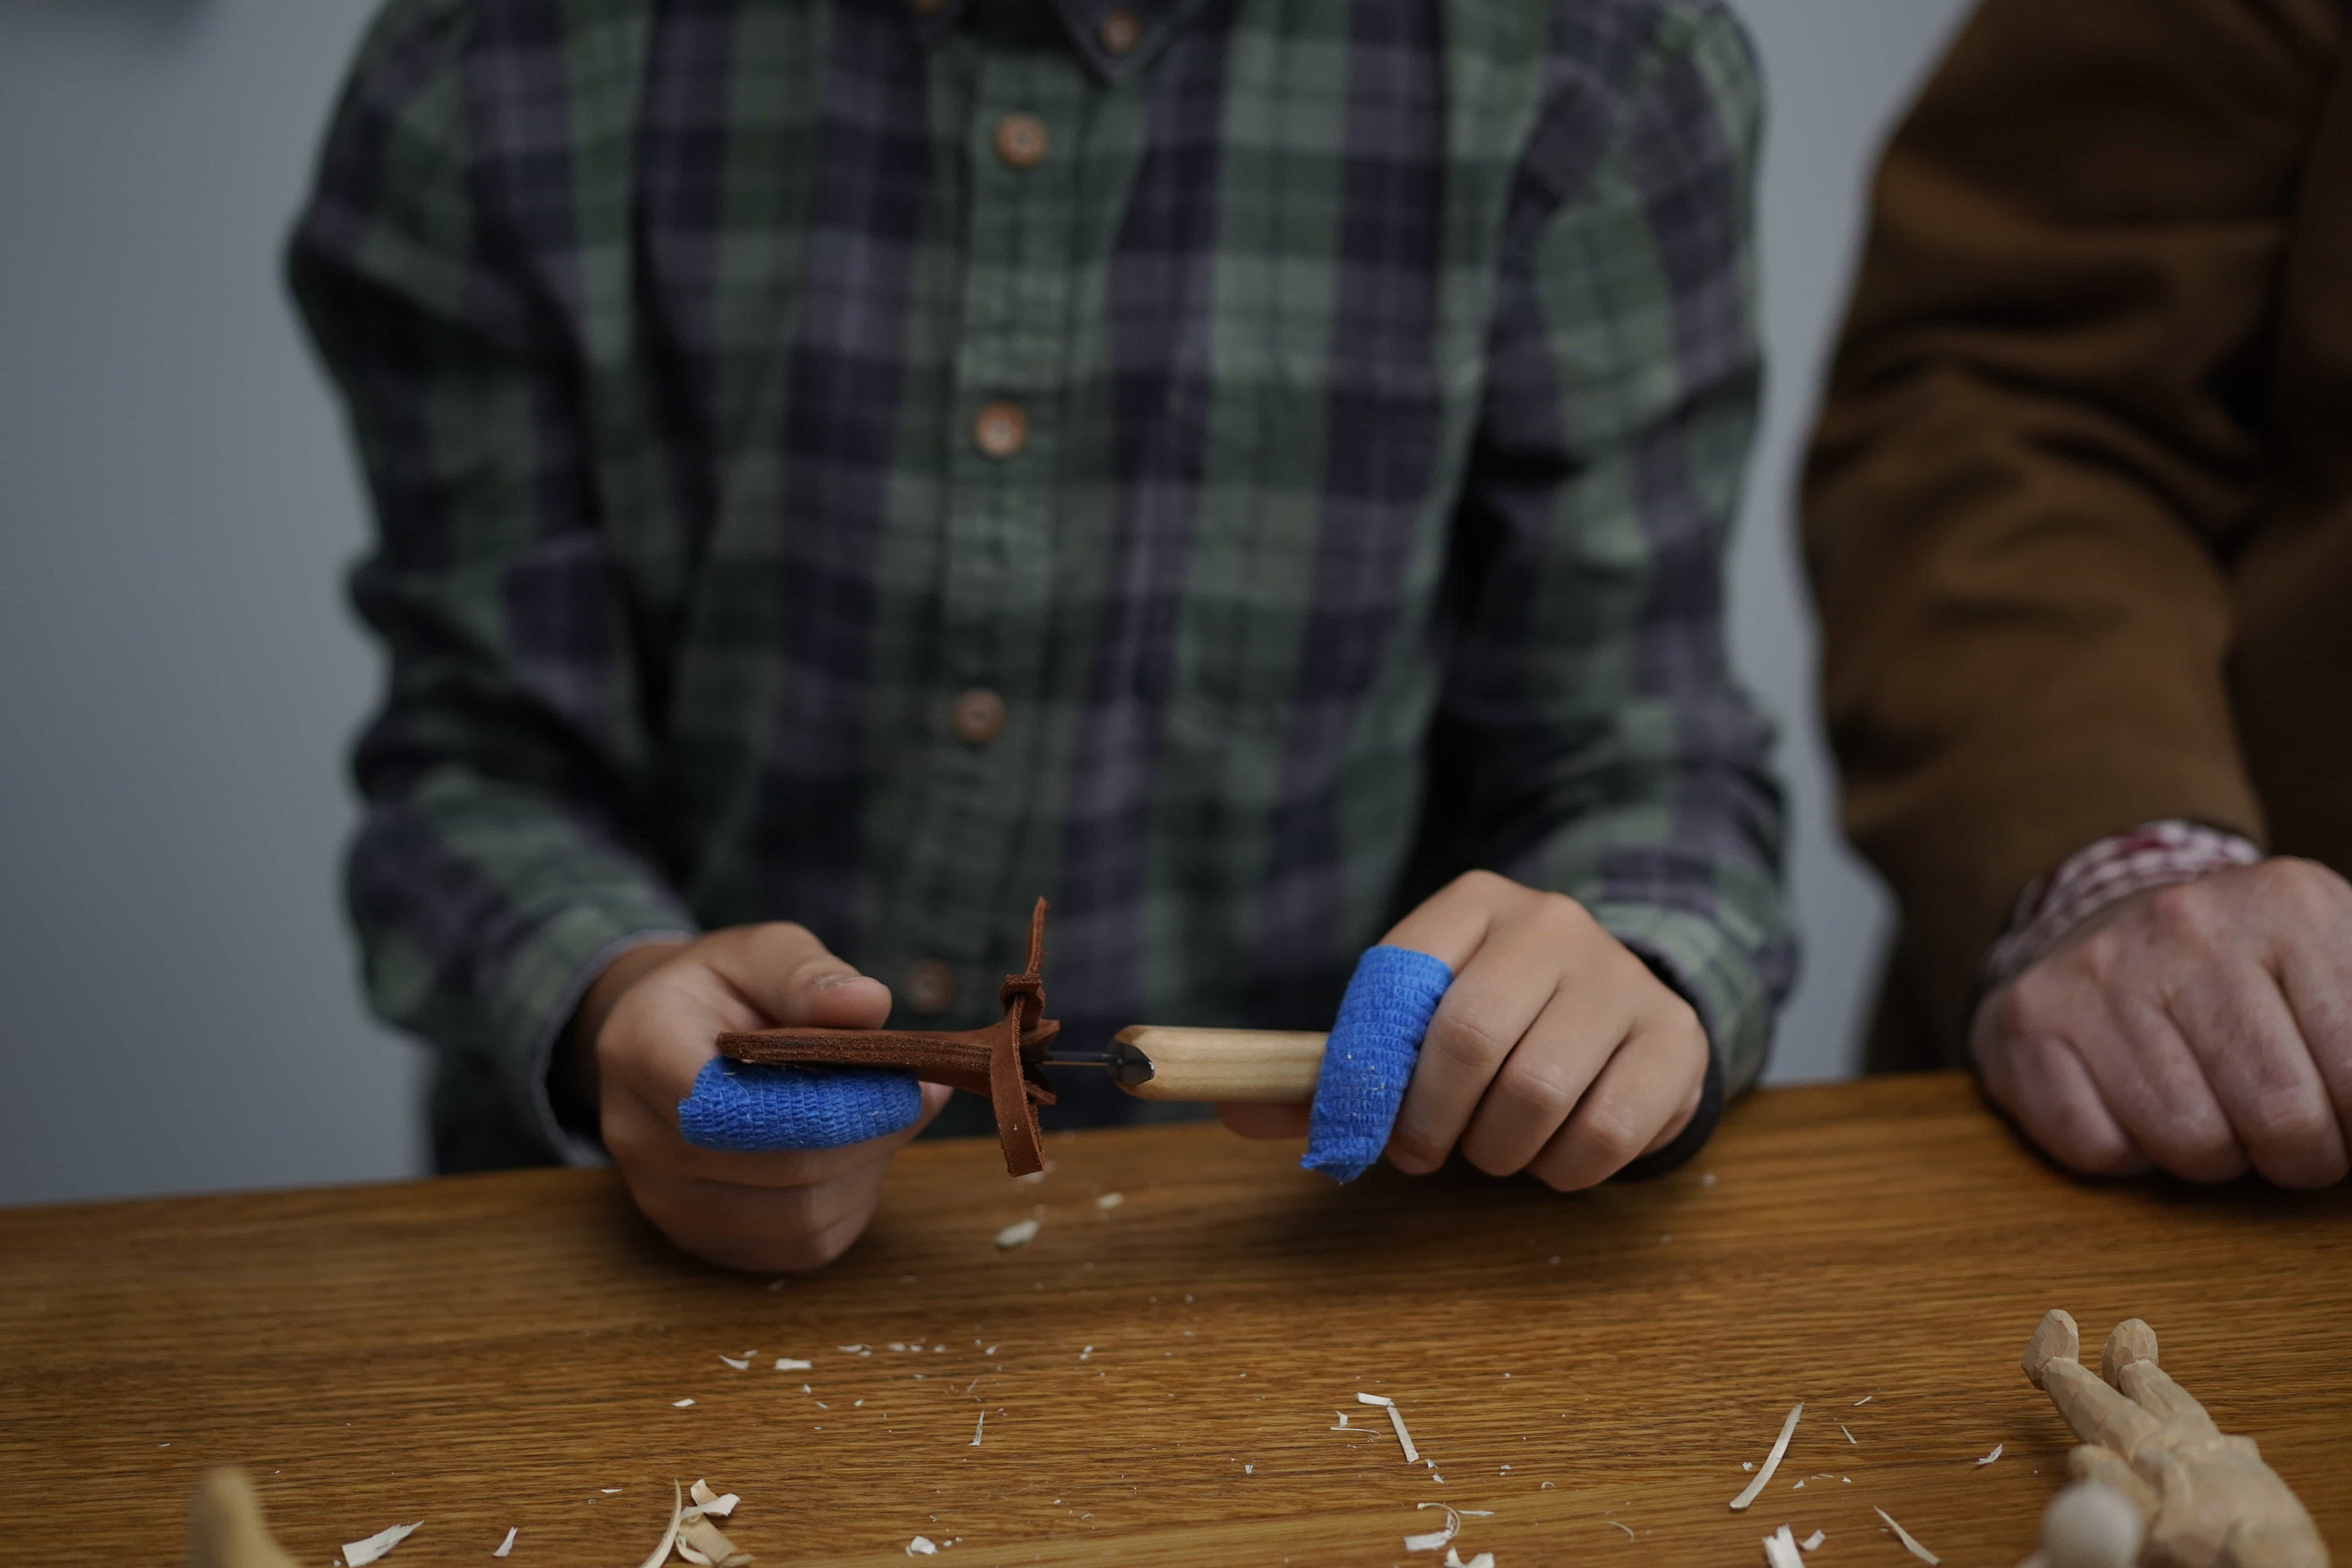 BeaverCraft Whittling Knife for Beginners C1 Kid - Whittling Knife for Kids  Safety Carving Knife - Children Whittling Knife for Entry-Level Carvers -  Kids-Friendly Woodcarving Tools for Beginners